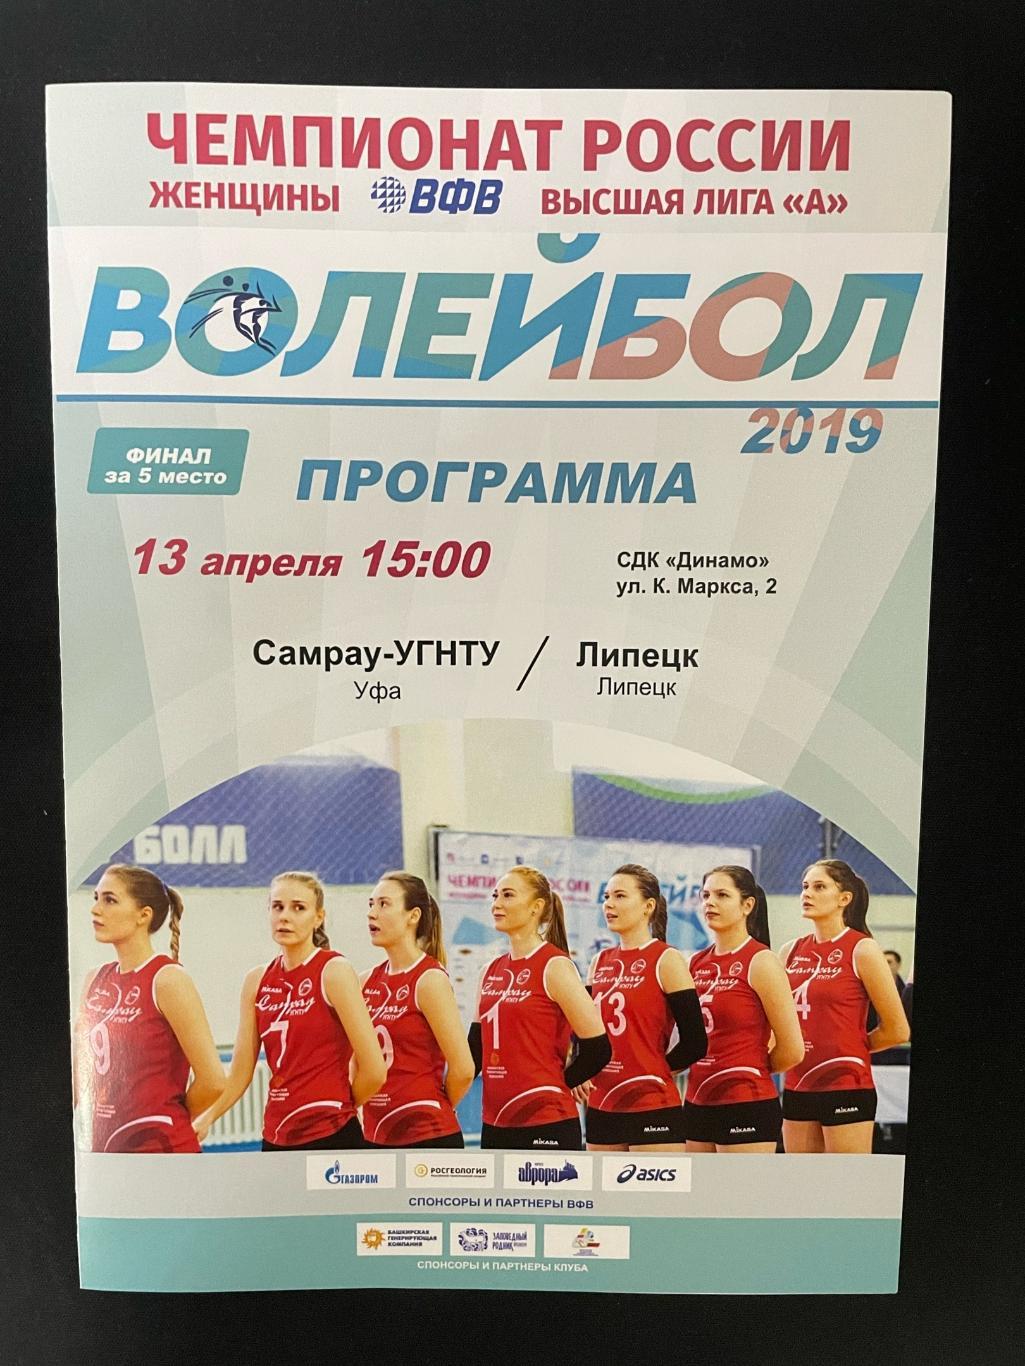 Самрау-УГНТУ Уфа - Липецк 2019